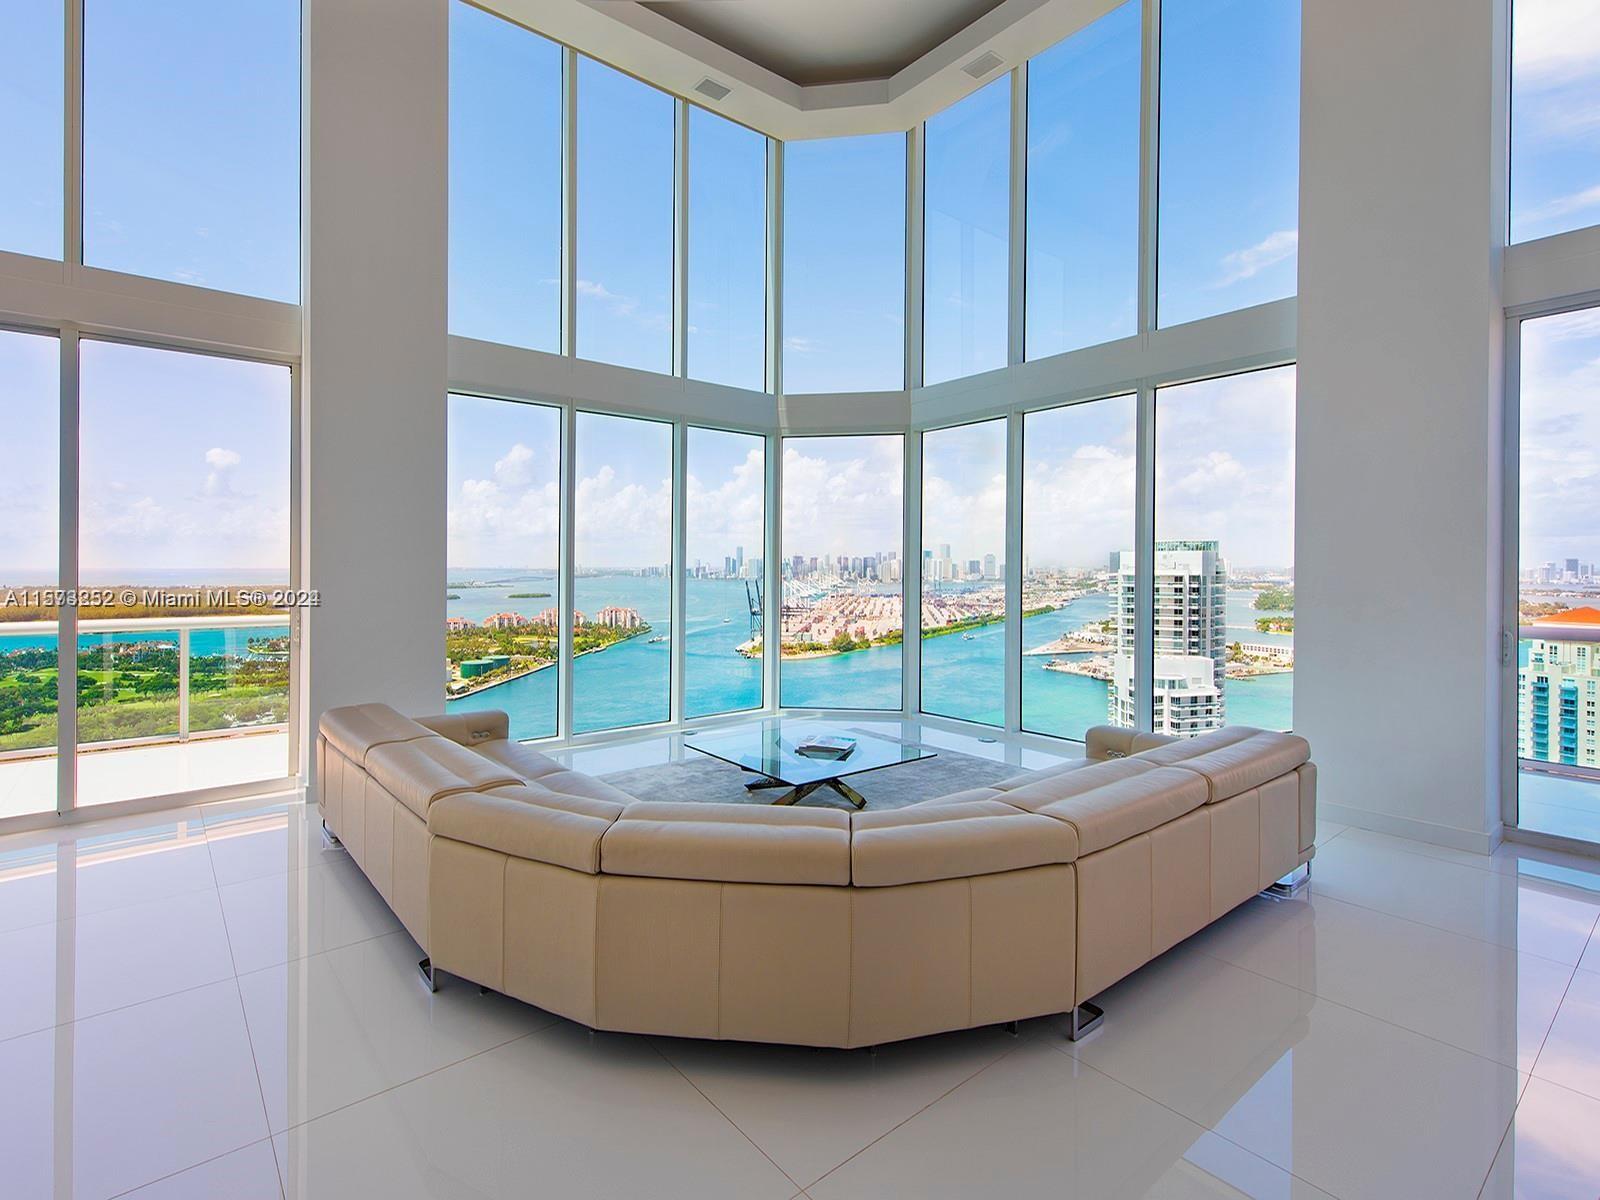 Rental Property at 300 S Pointe Dr Lph2, Miami Beach, Miami-Dade County, Florida - Bedrooms: 3 
Bathrooms: 4  - $25,000 MO.